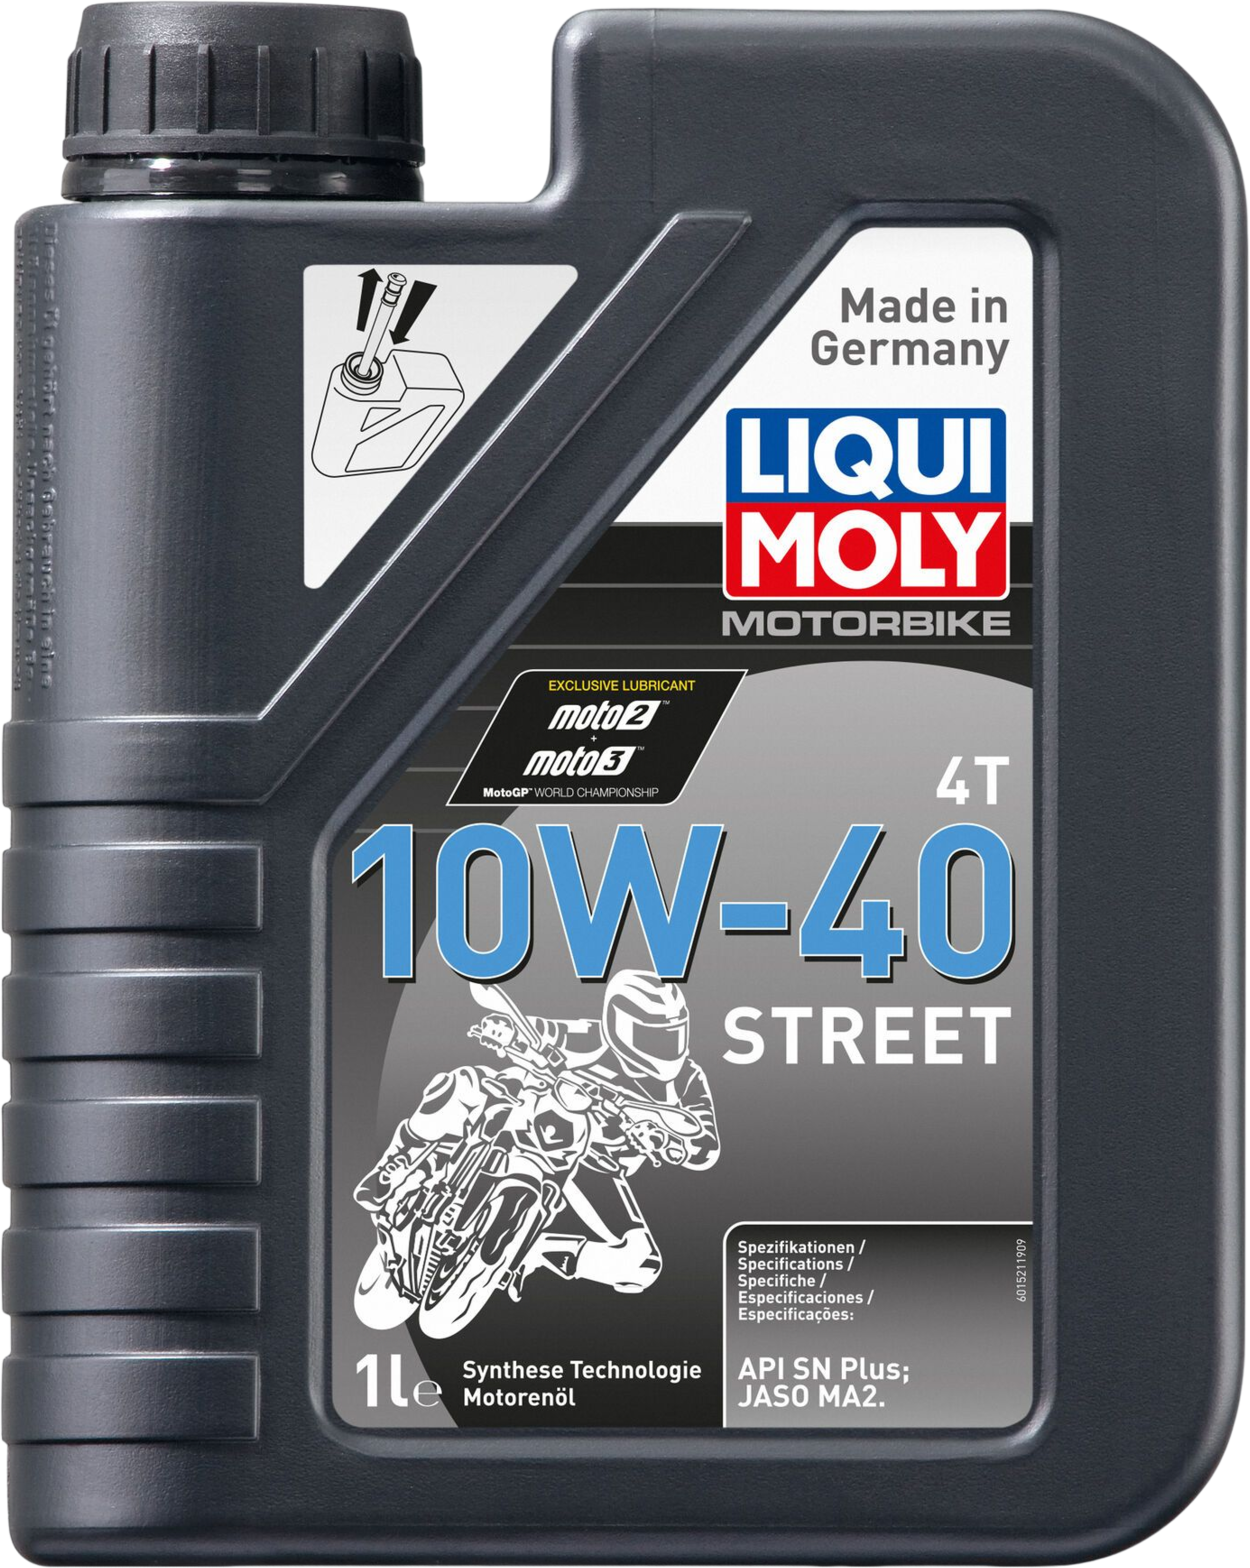 Liqui Moly Motorbike 4T 10W-40 Street, 1 lt